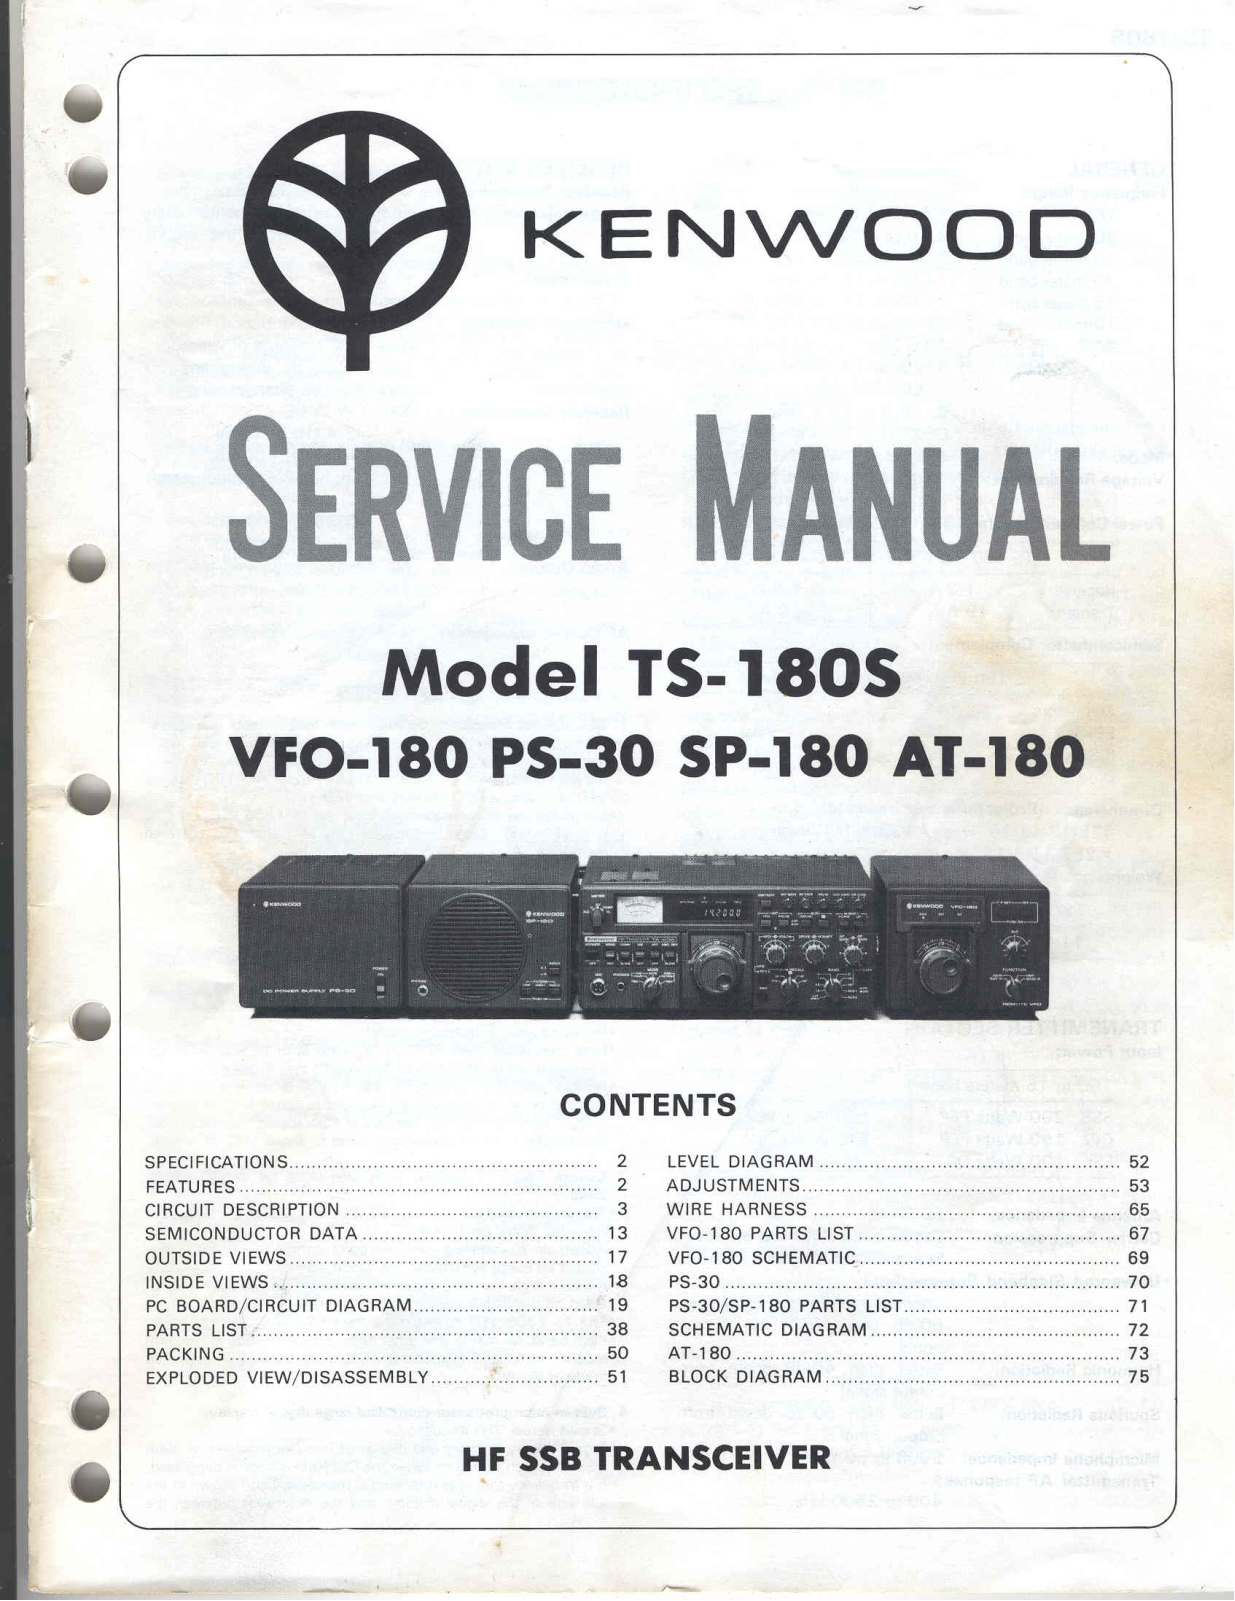 Kenwood AT-180, SP-180, VFO-180, TS-180S, PS-30 Service Manual